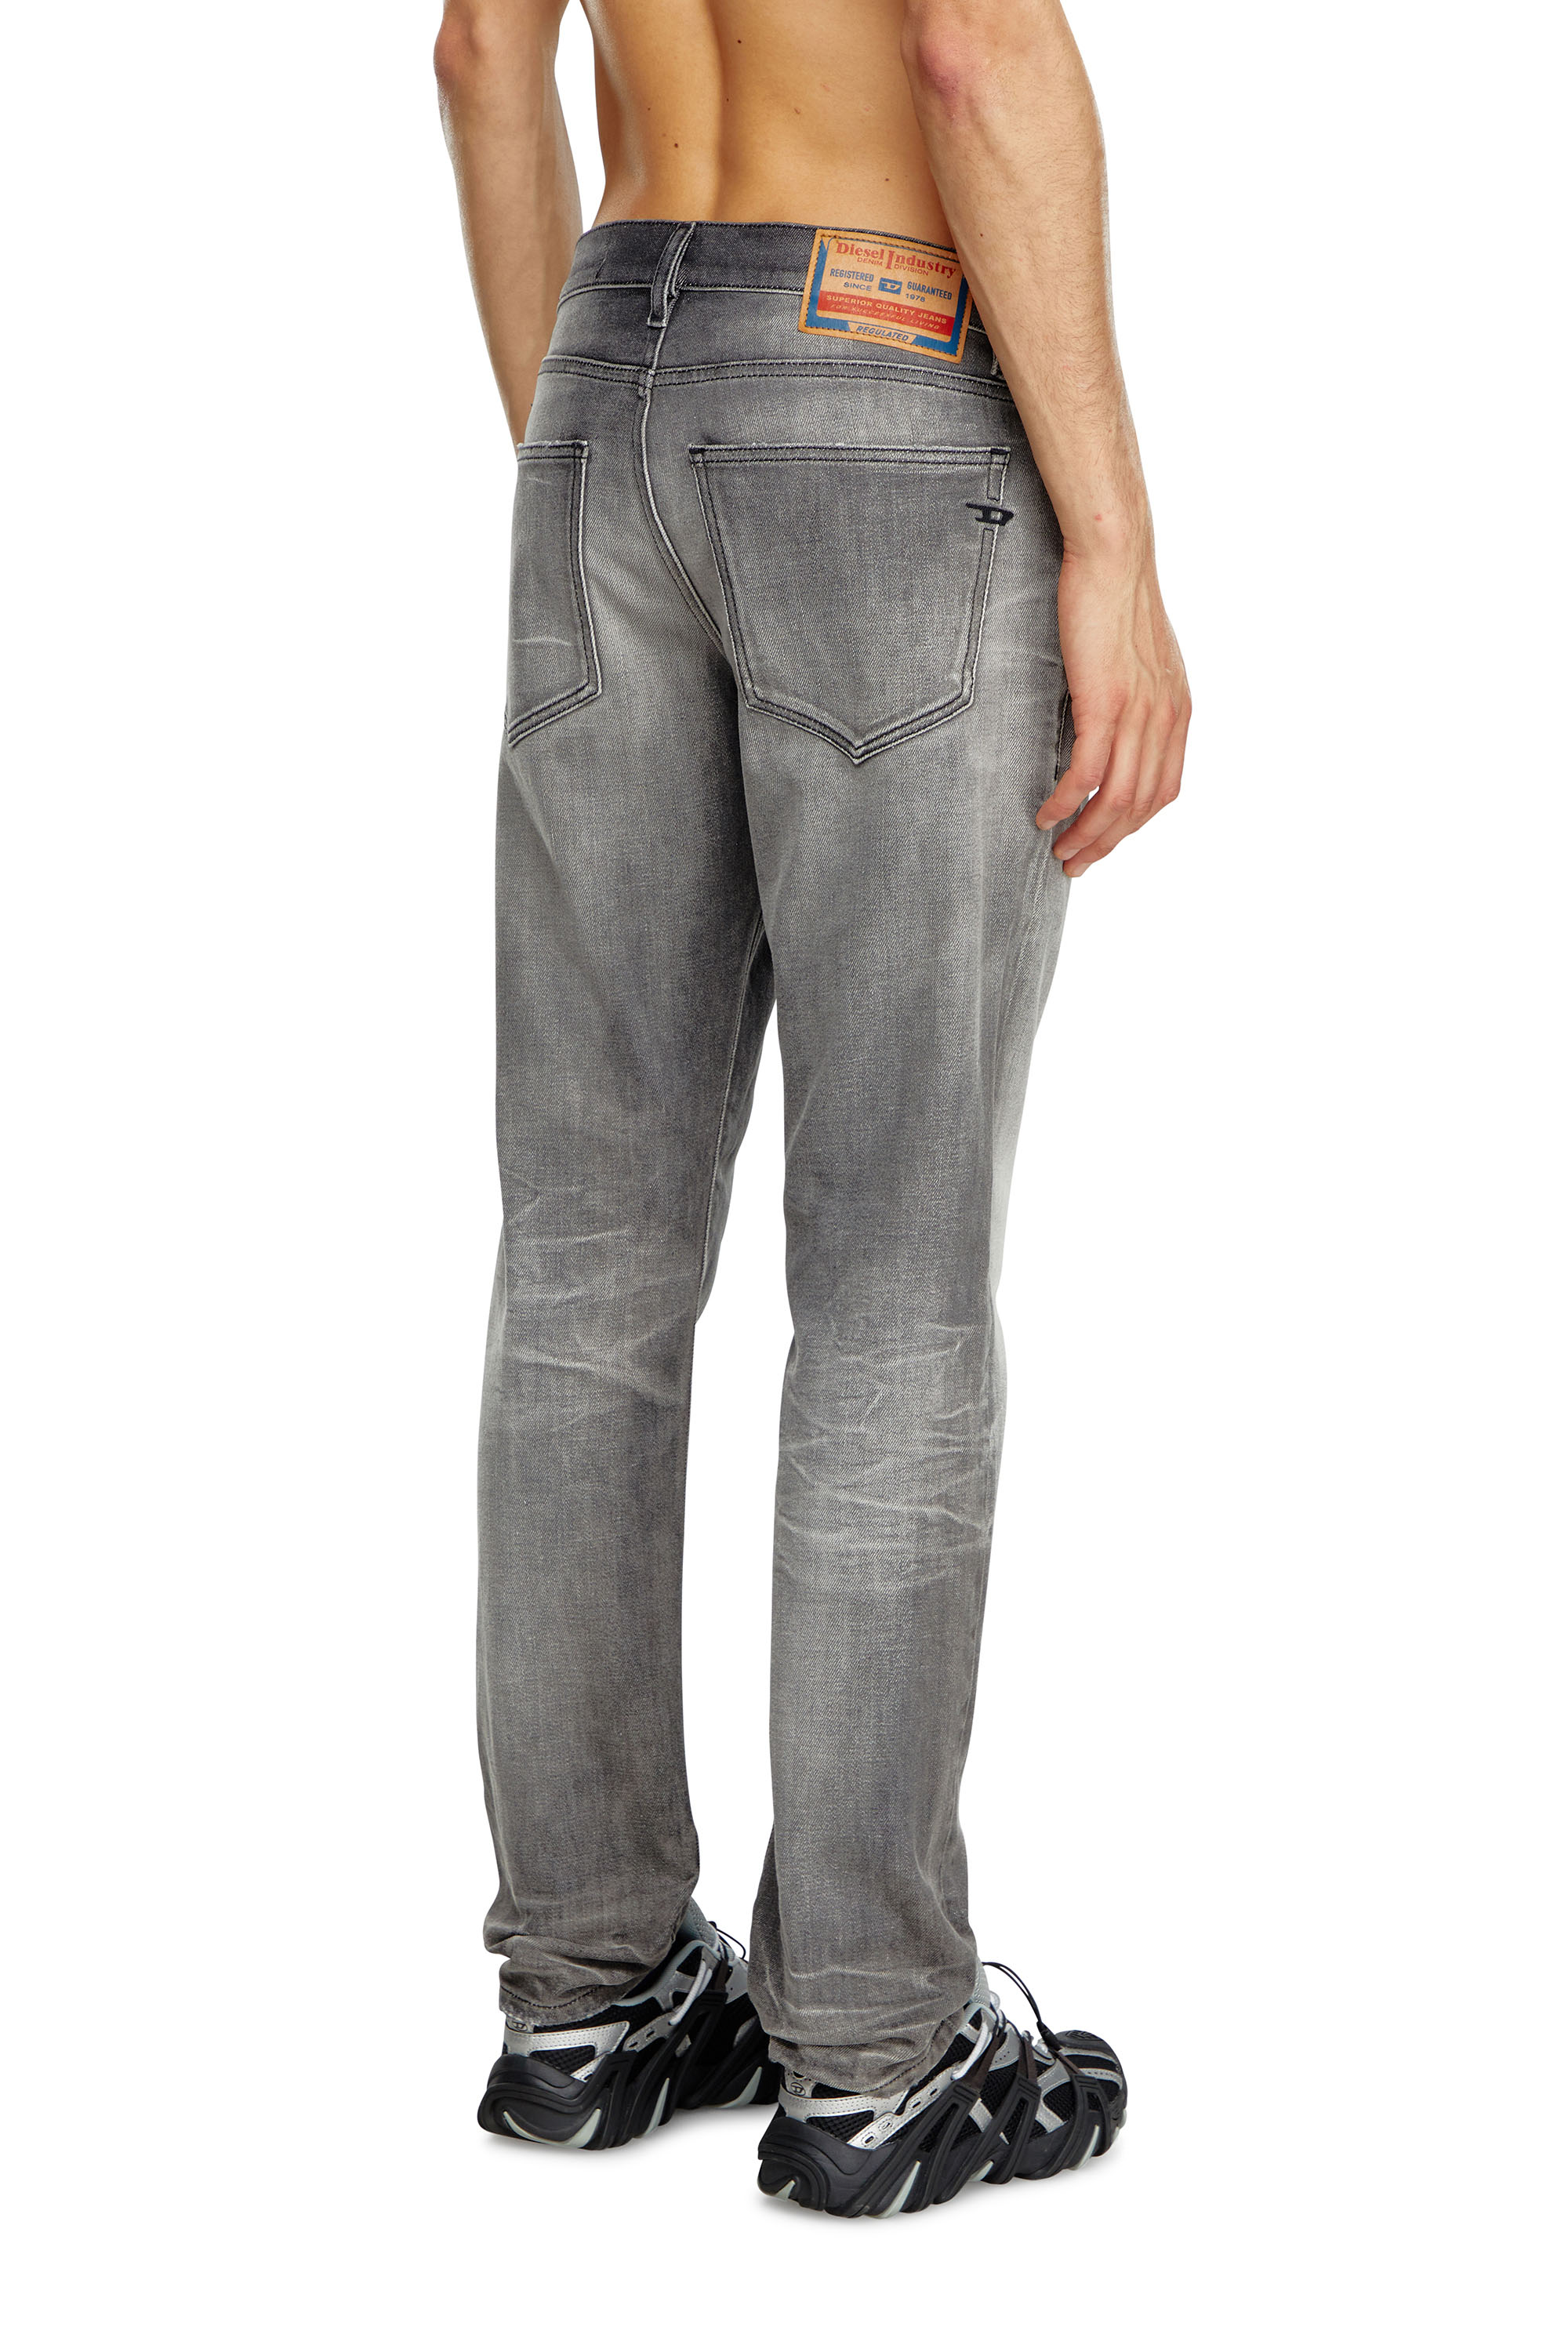 Diesel - Slim Jeans 2019 D-Strukt 09J58, Hombre Slim Jeans - 2019 D-Strukt in Gris - Image 4